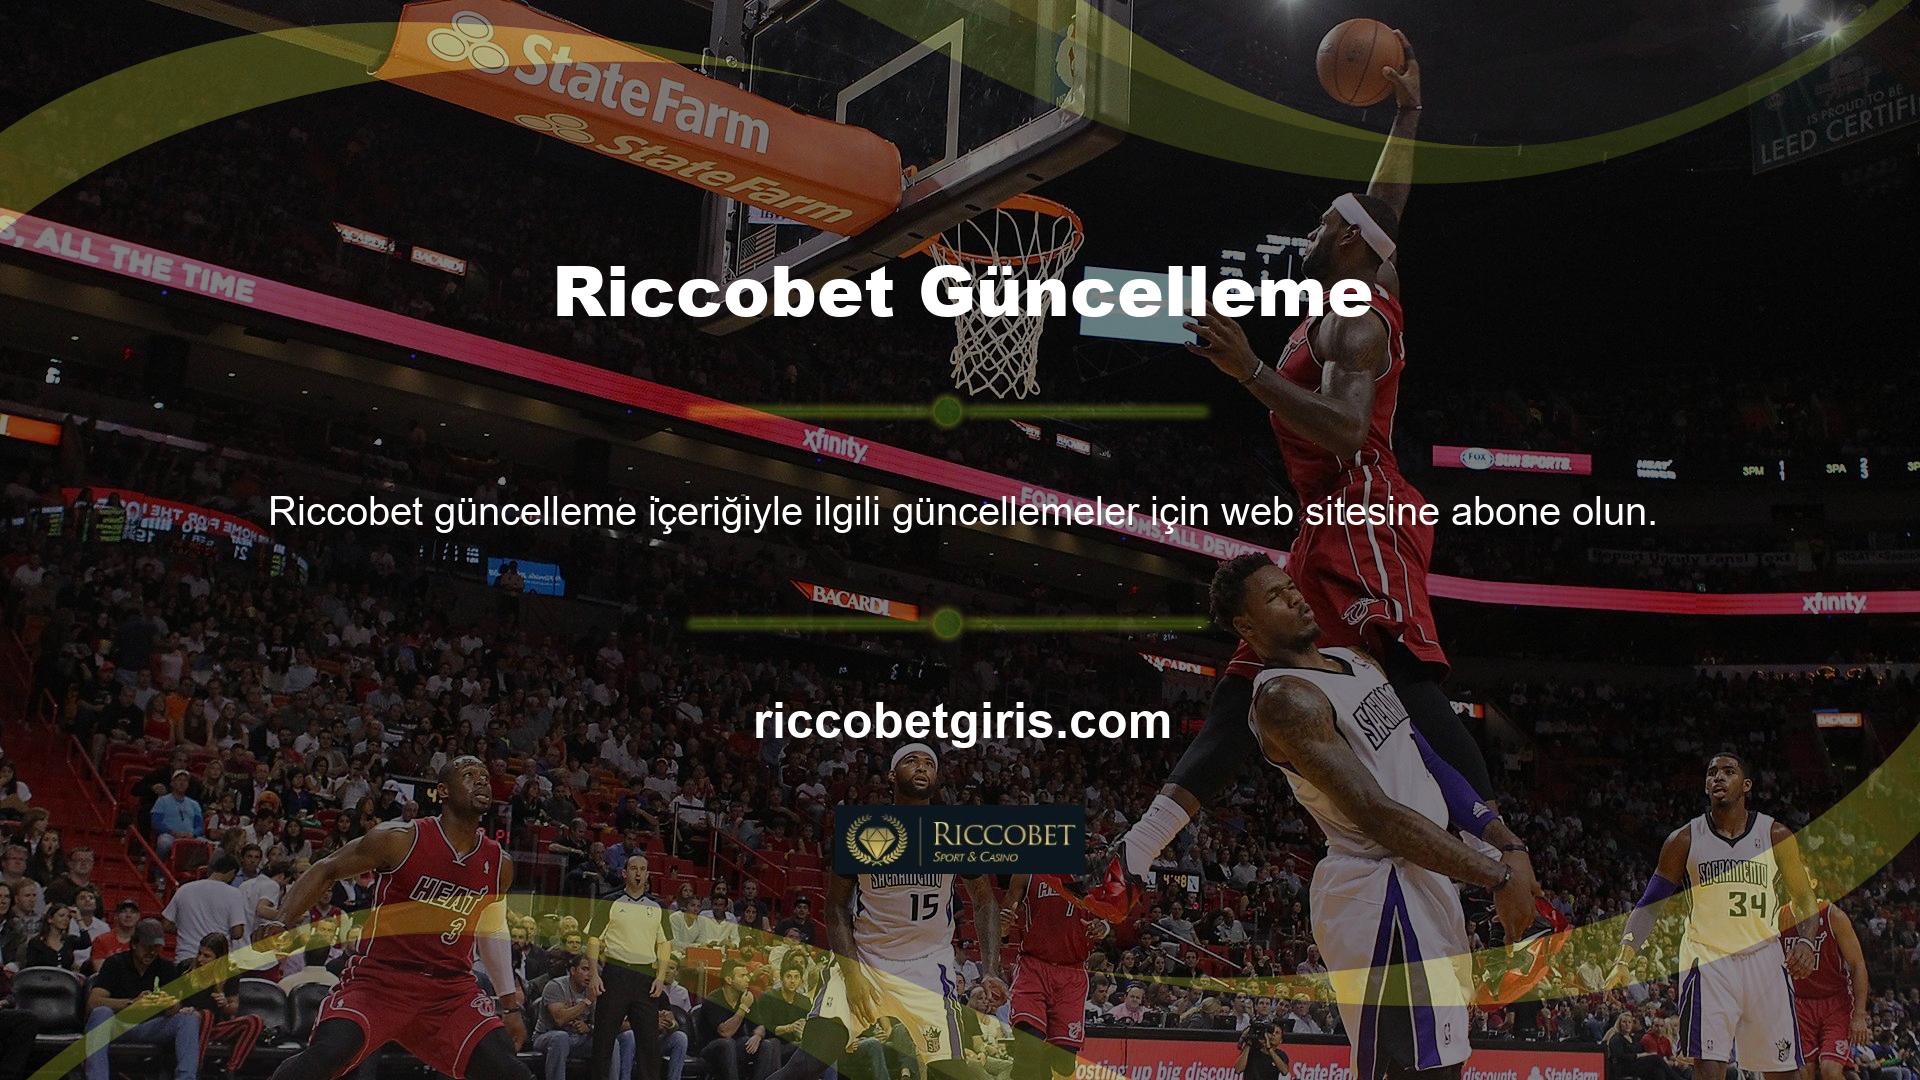 Yine de Riccobet web sitesine erişerek web sitesinden gelen bildirimleri kapatabilirsiniz